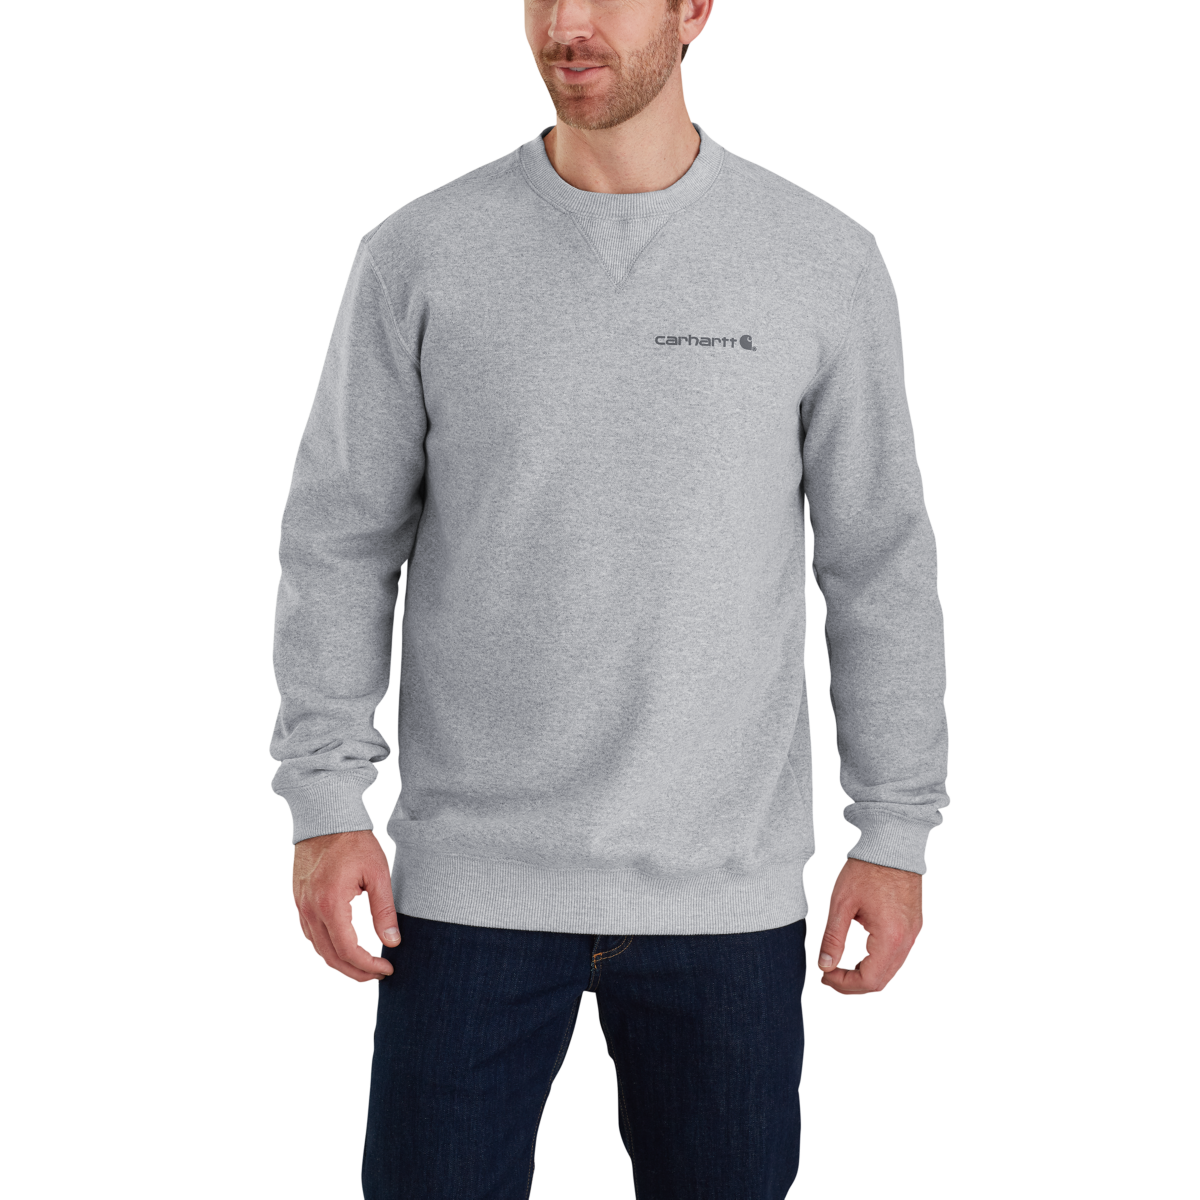 103307 - Carhartt Men's Midweight Graphic Crewneck Sweatshirt